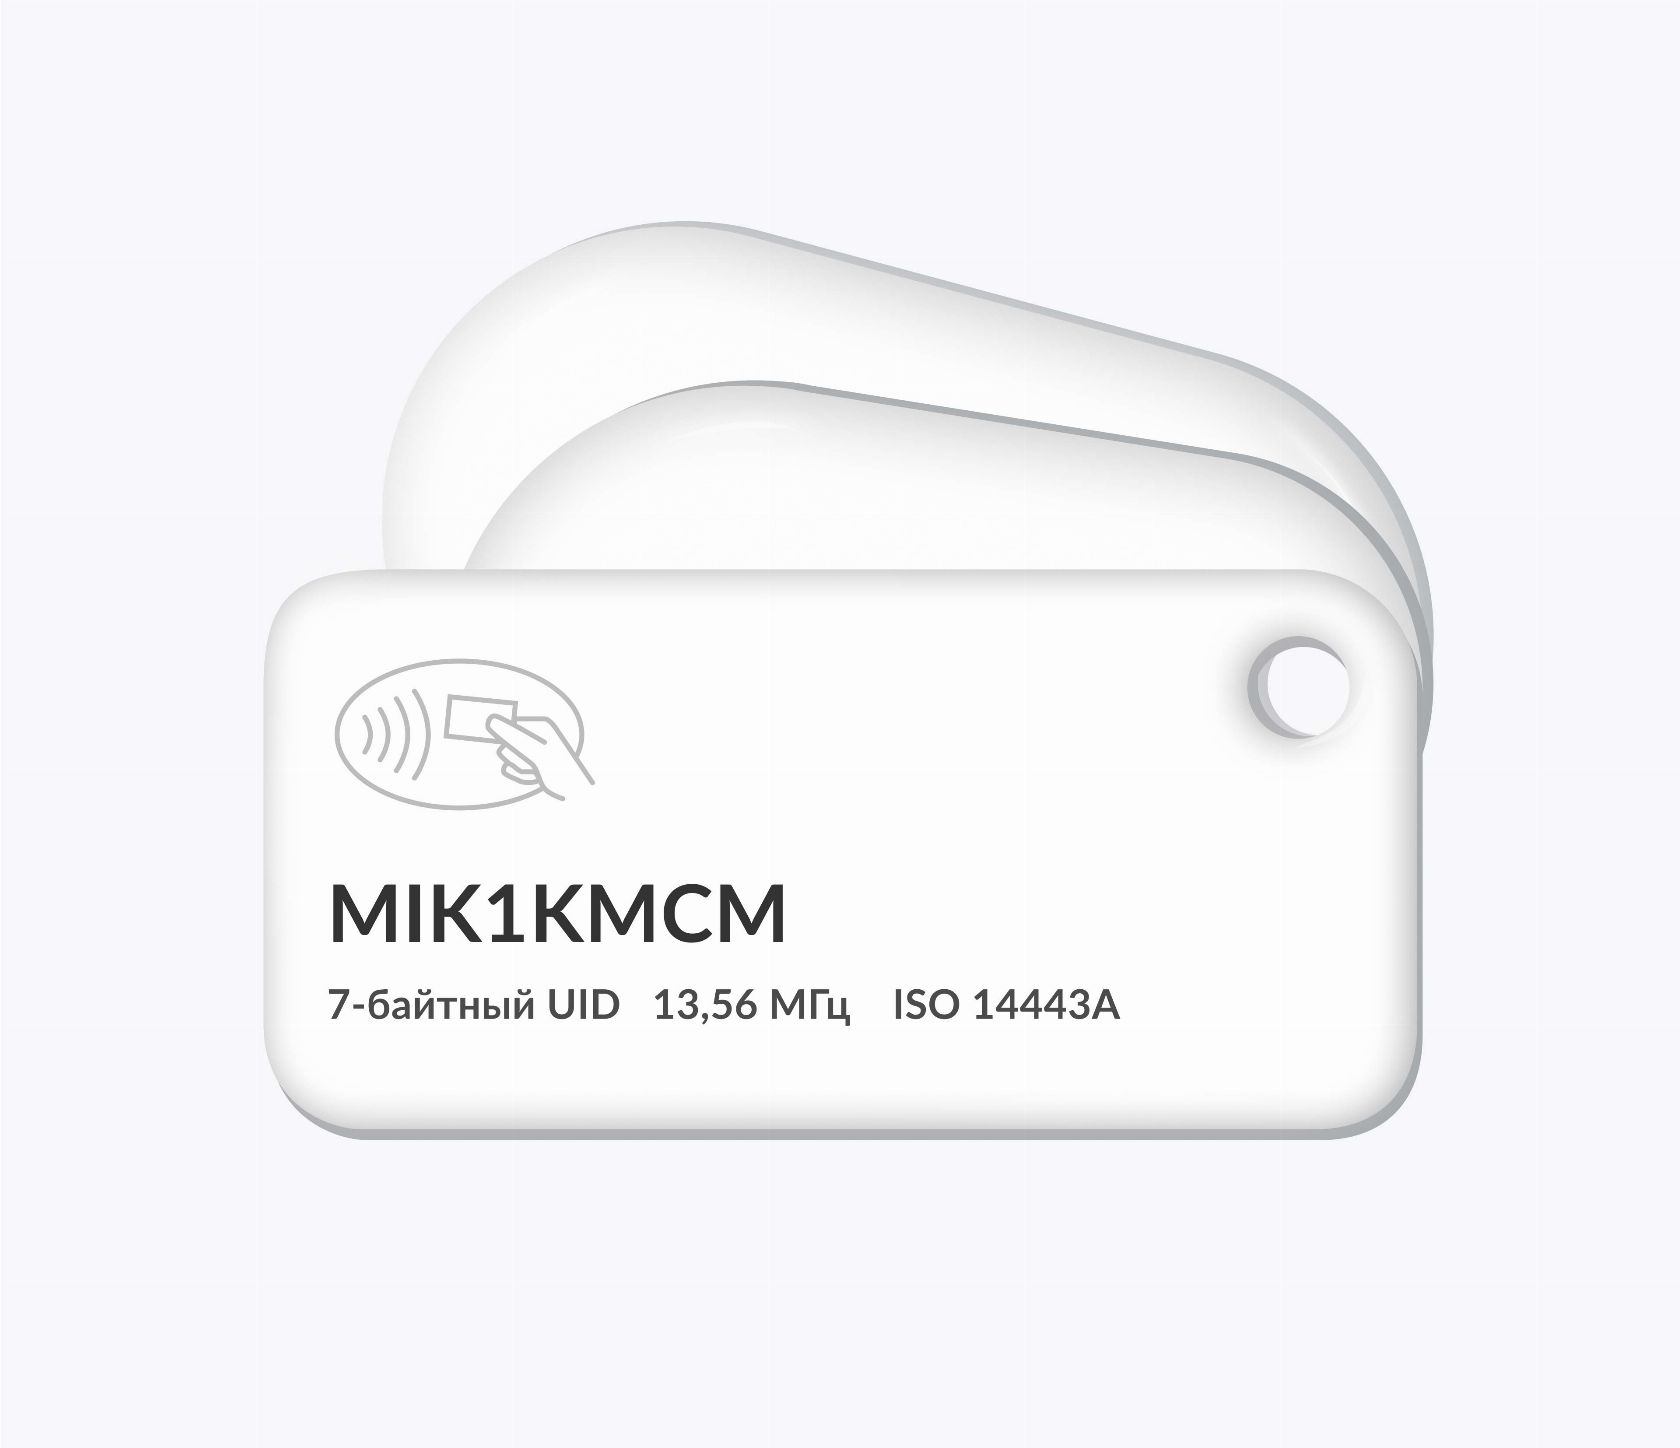 RFID-брелоки NEOKEY® с чипом MIK1KMCM 7 byte UID и вашим логотипом